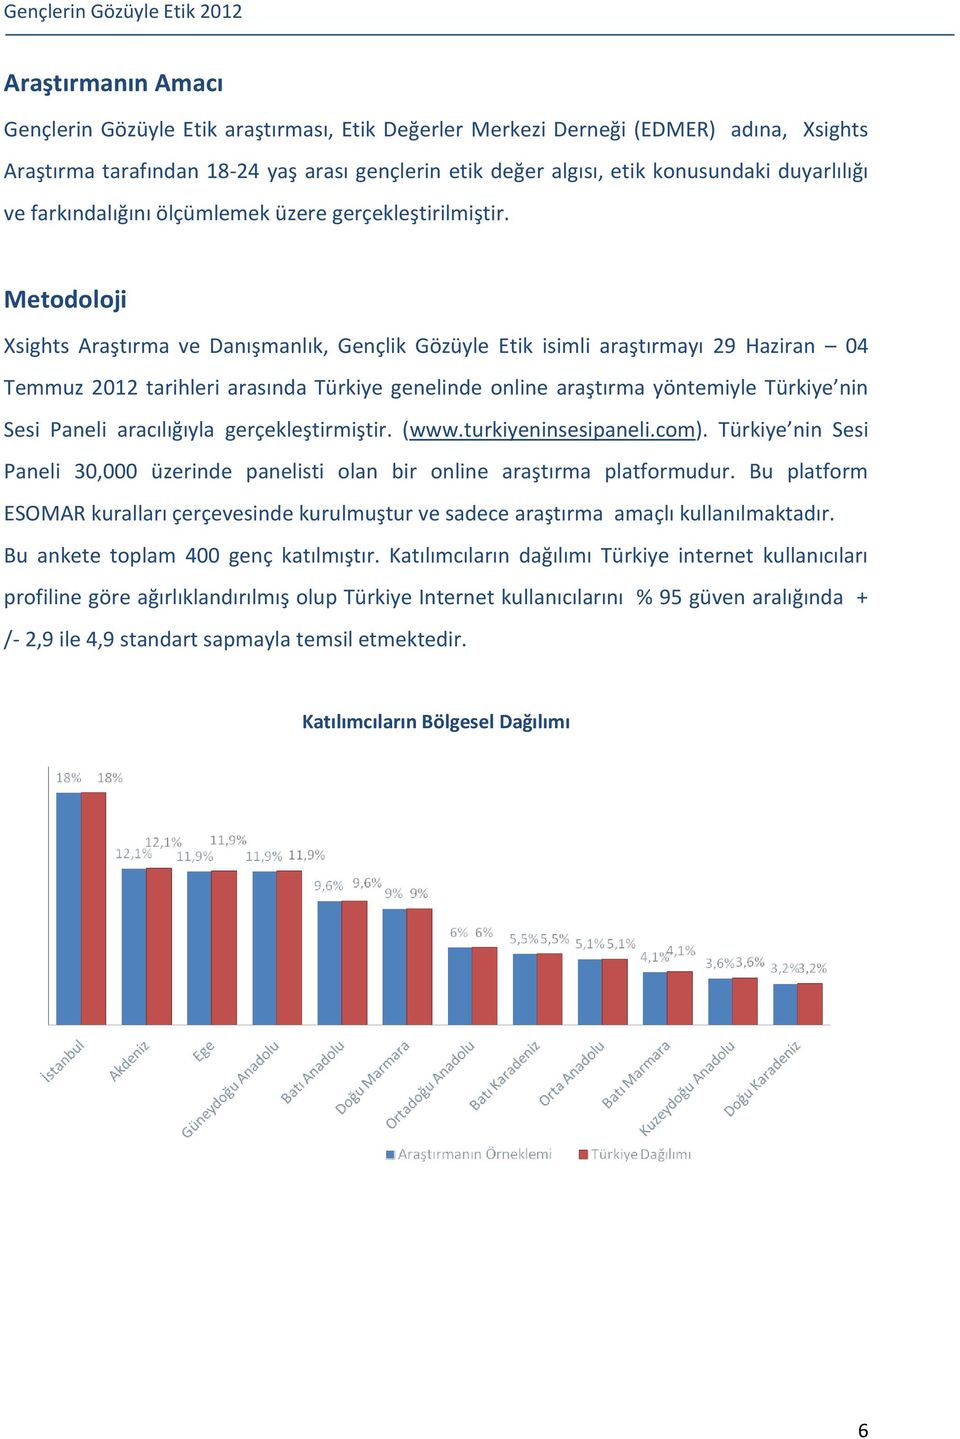 Metodoloji Xsights Araştırma ve Danışmanlık, Gençlik Gözüyle Etik isimli araştırmayı 29 Haziran 04 Temmuz 2012 tarihleri arasında Türkiye genelinde online araştırma yöntemiyle Türkiye nin Sesi Paneli